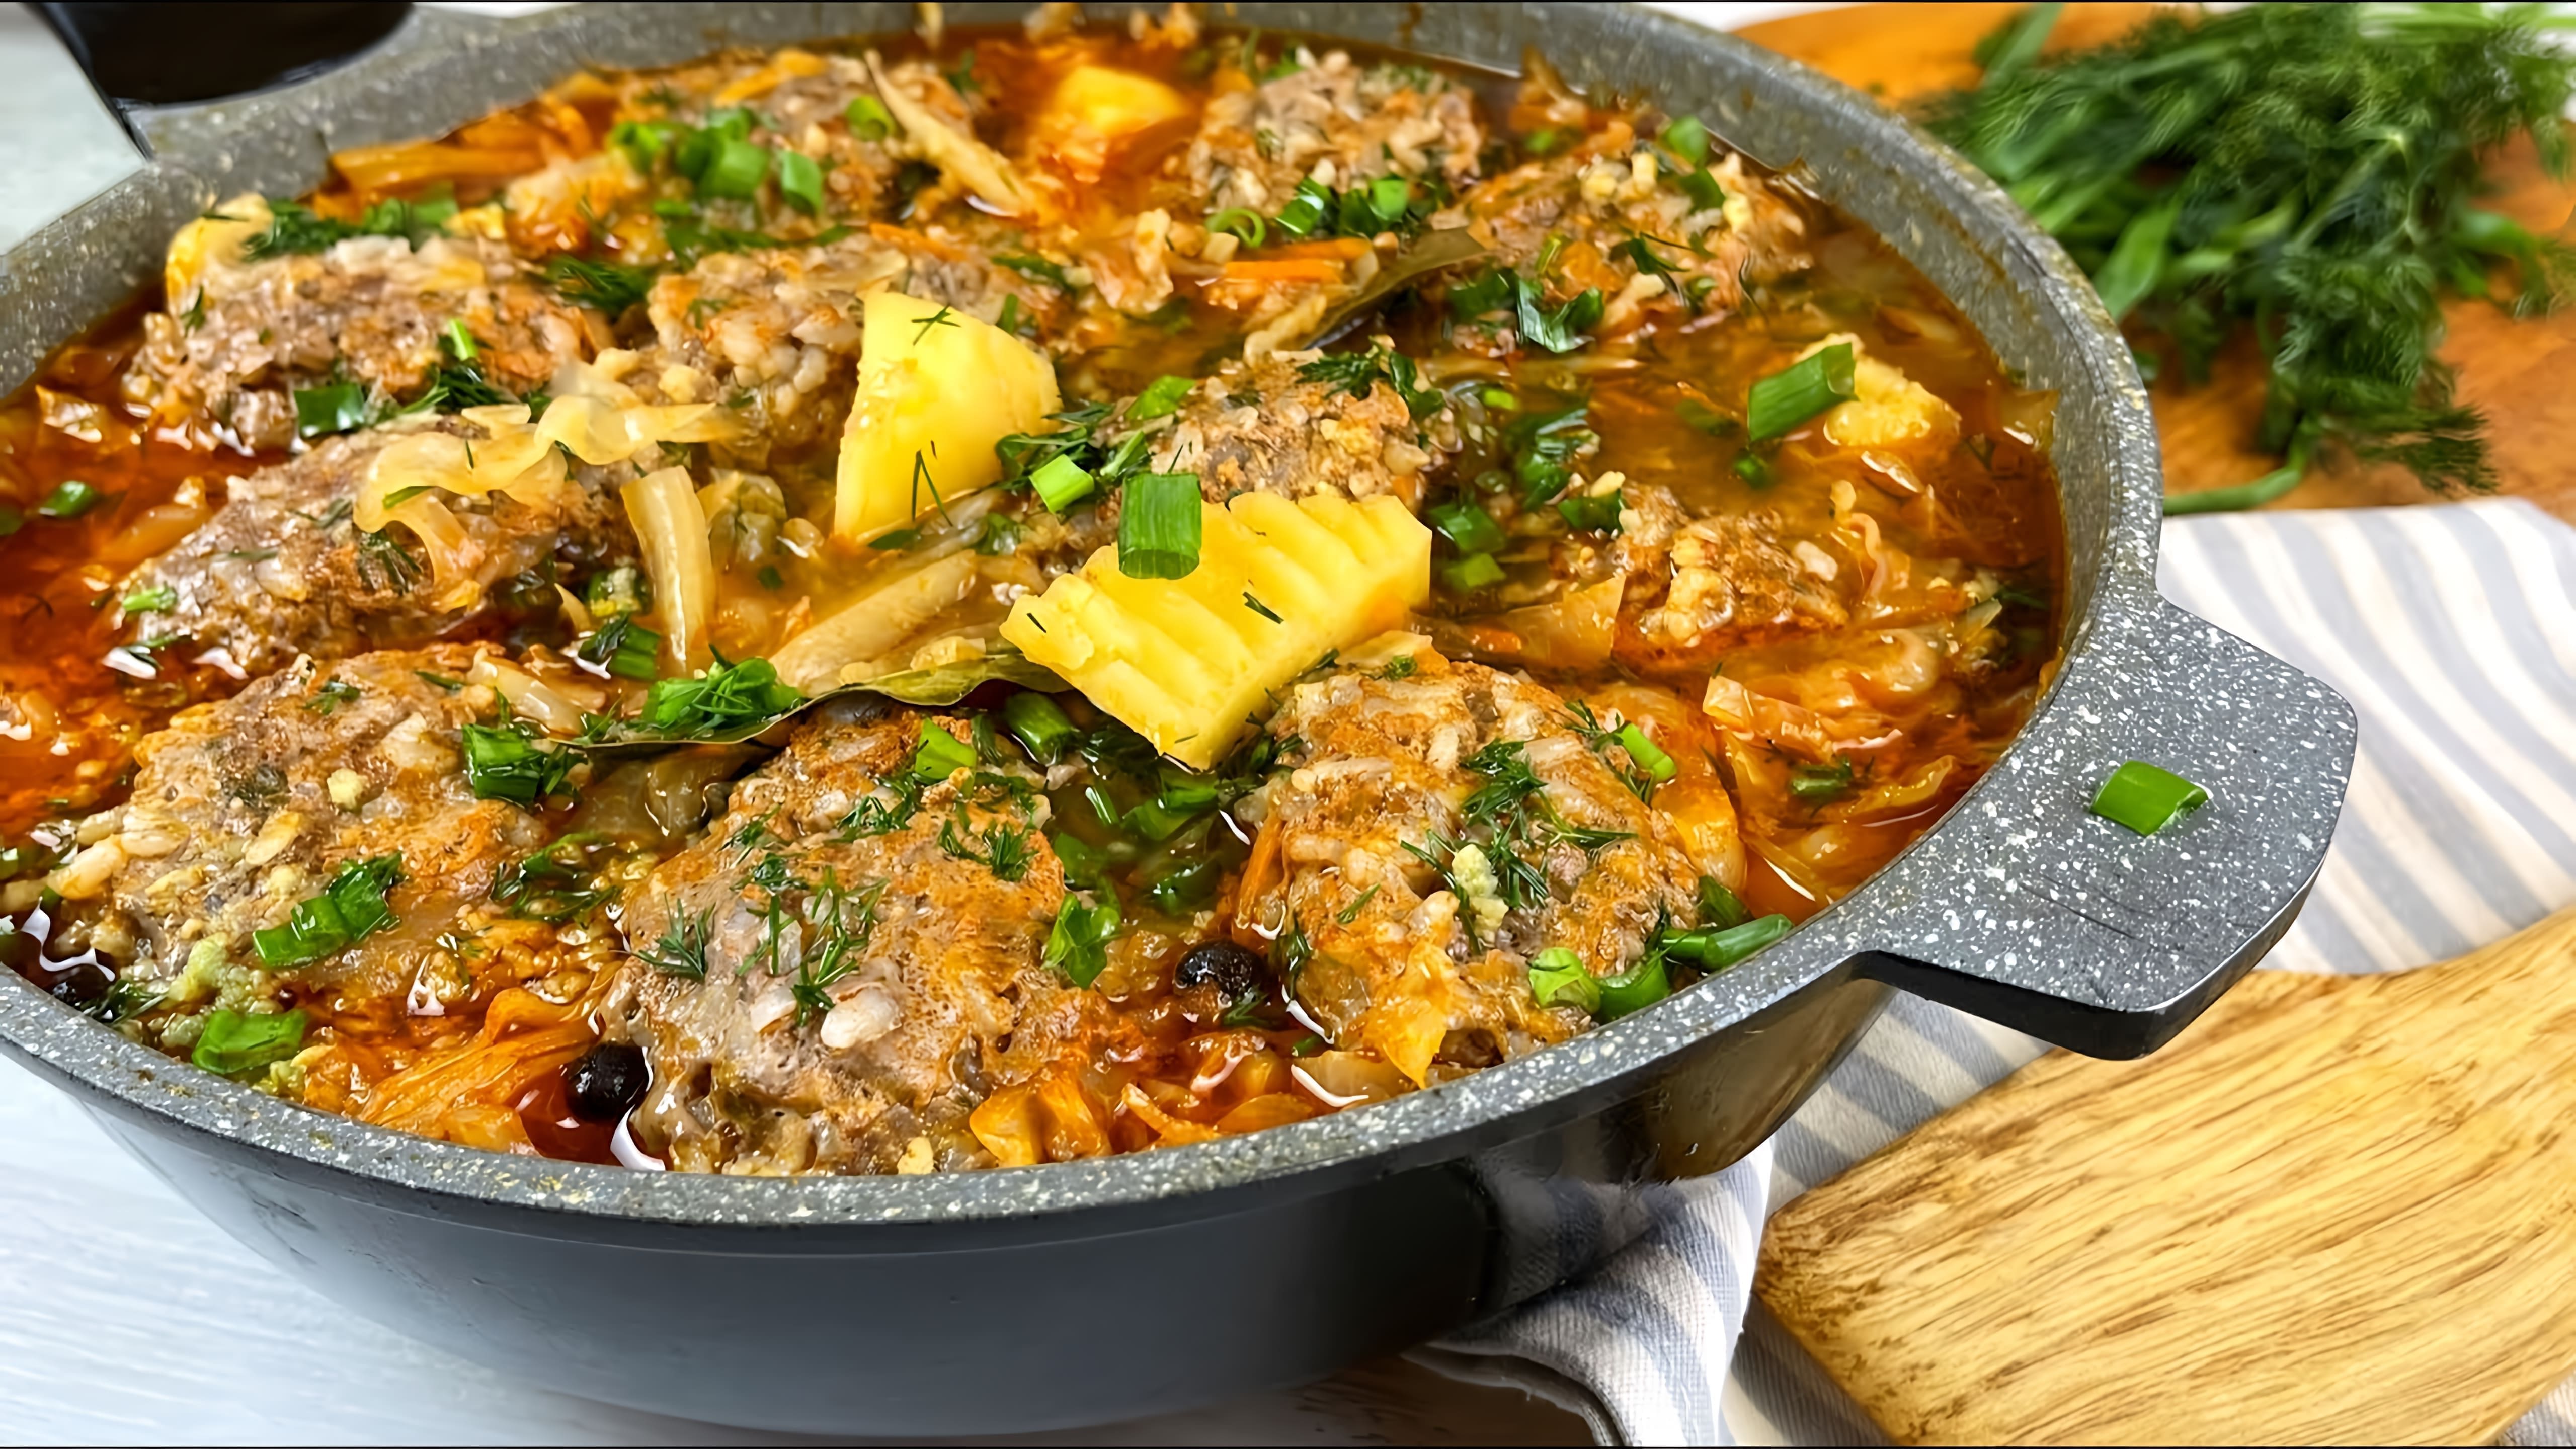 Видео как приготовить простое и сытное блюдо из мясных котлет и овощей, приготовленных вместе в одной сковороде